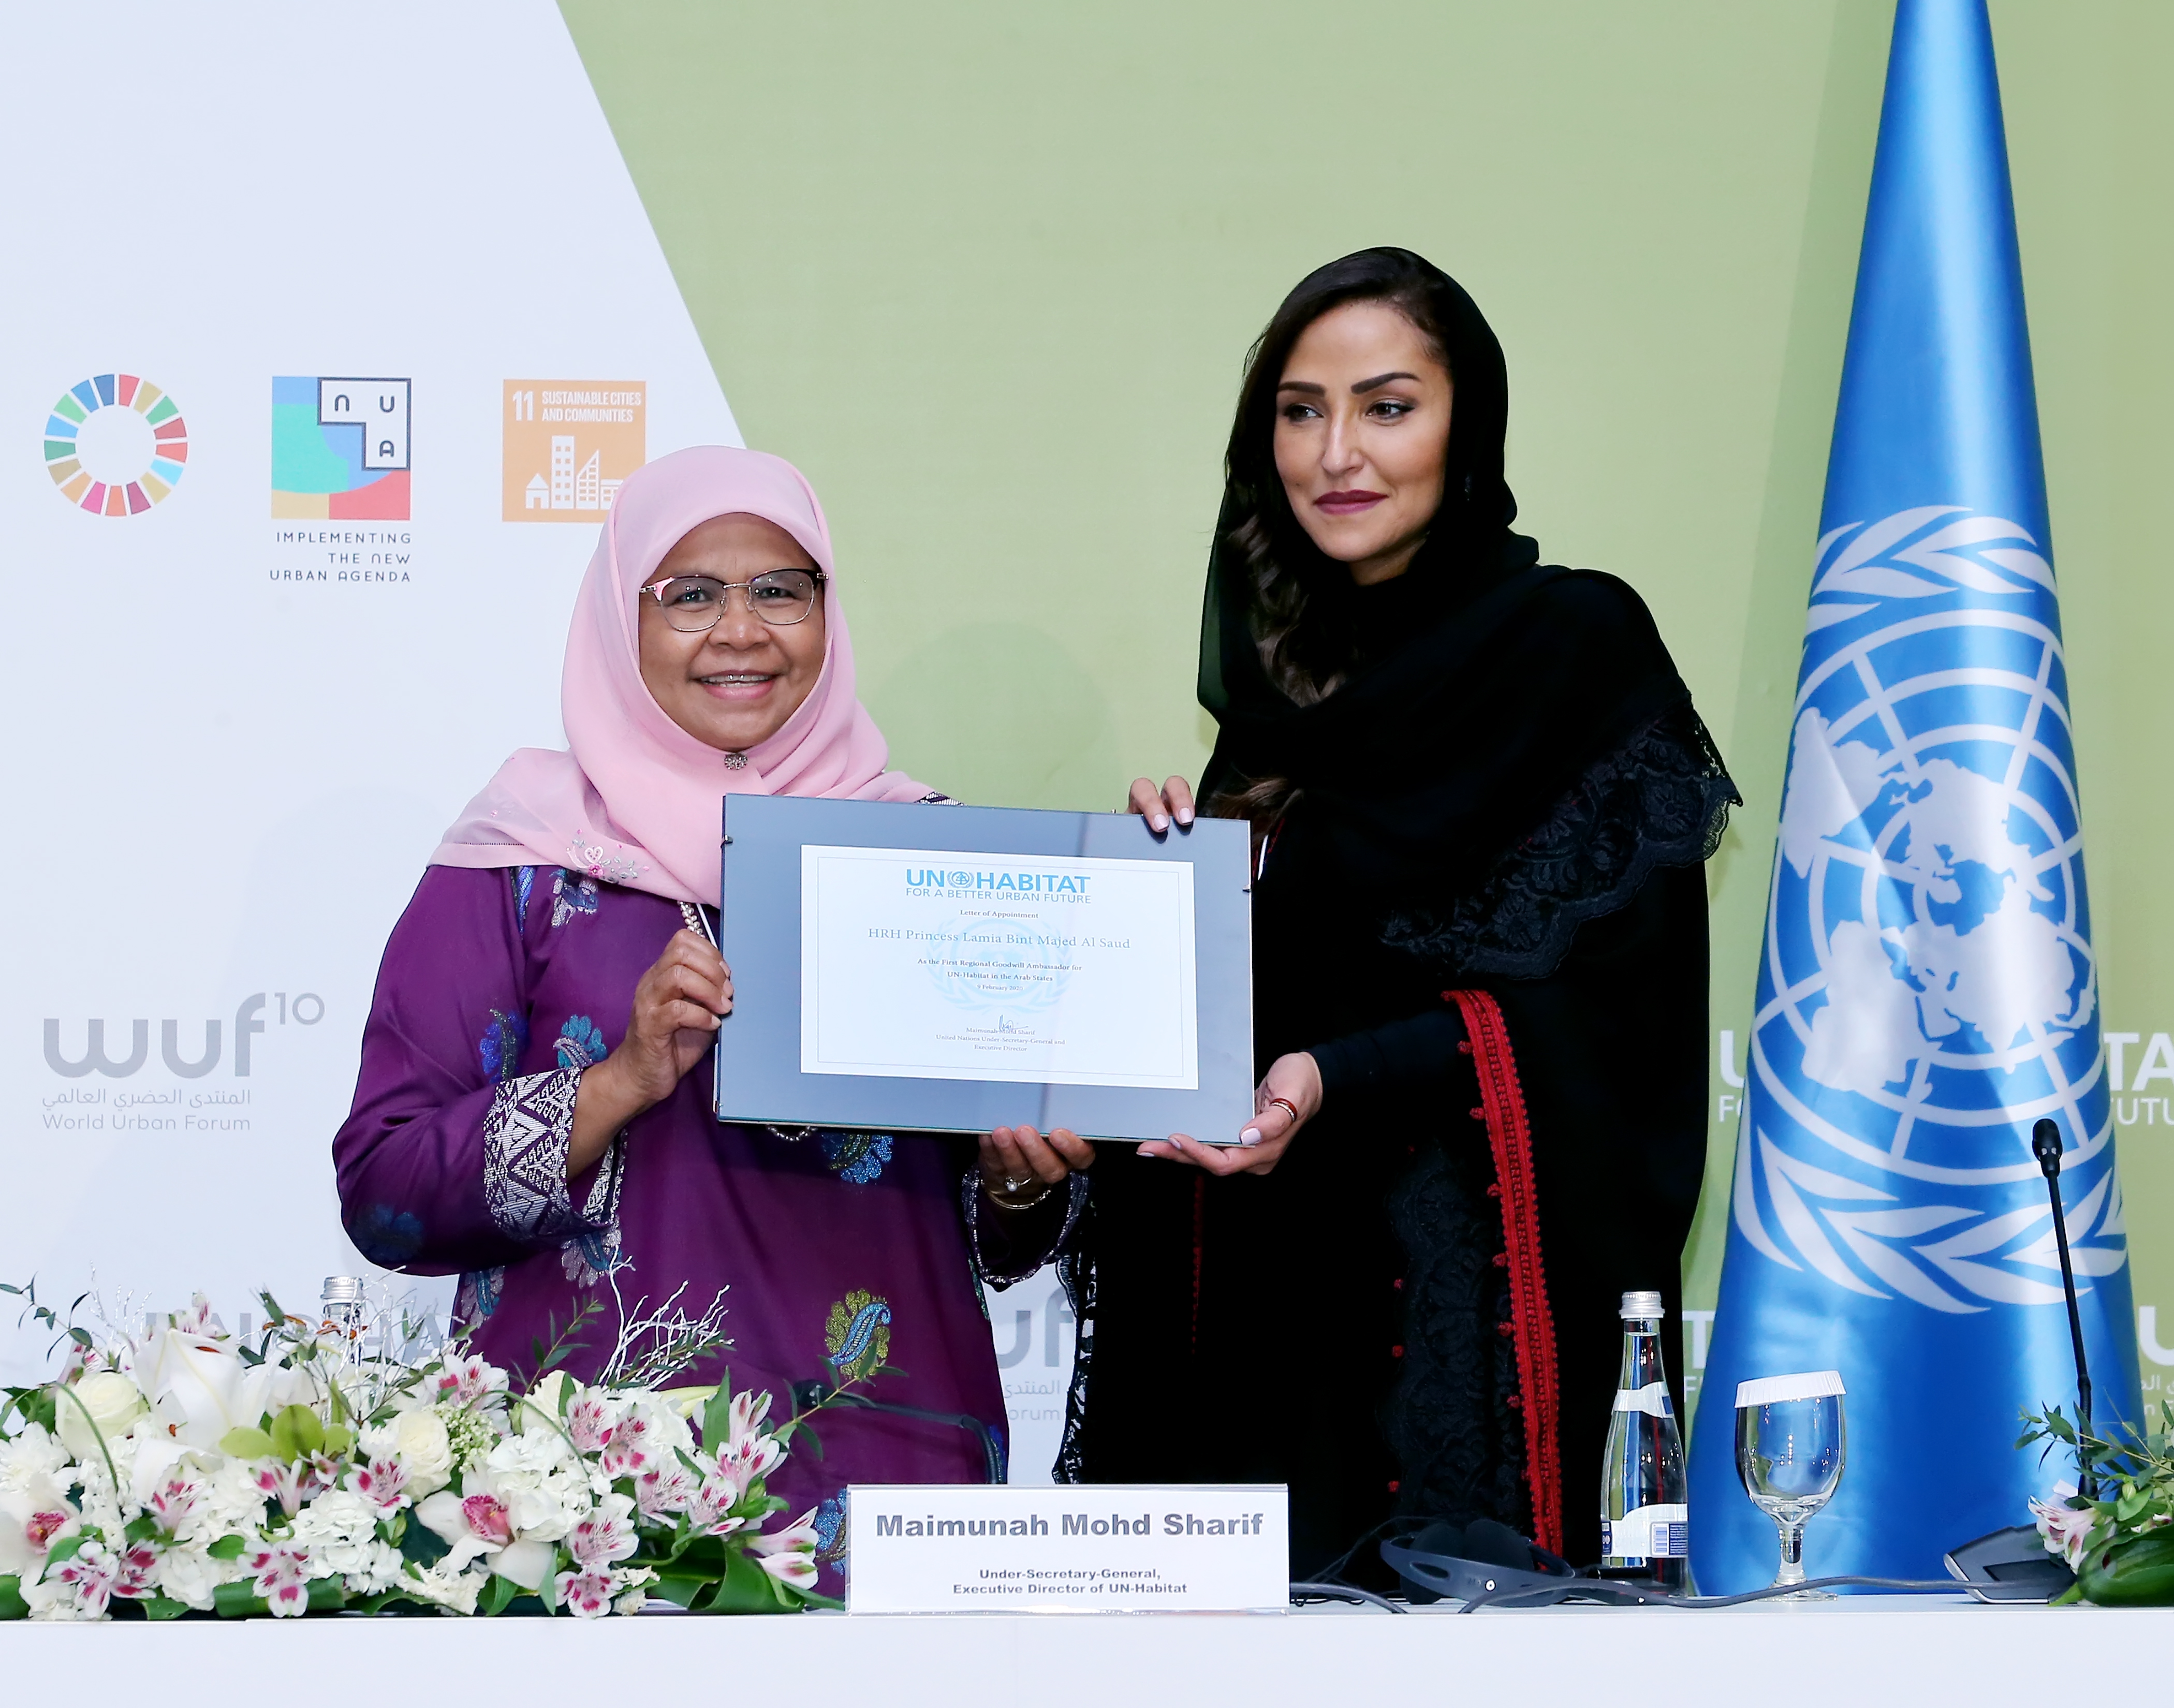 HRH Princess Lamia Bint Majed Al Saud appointed as UN-Habitat Regional Goodwill Ambassador for Arab States